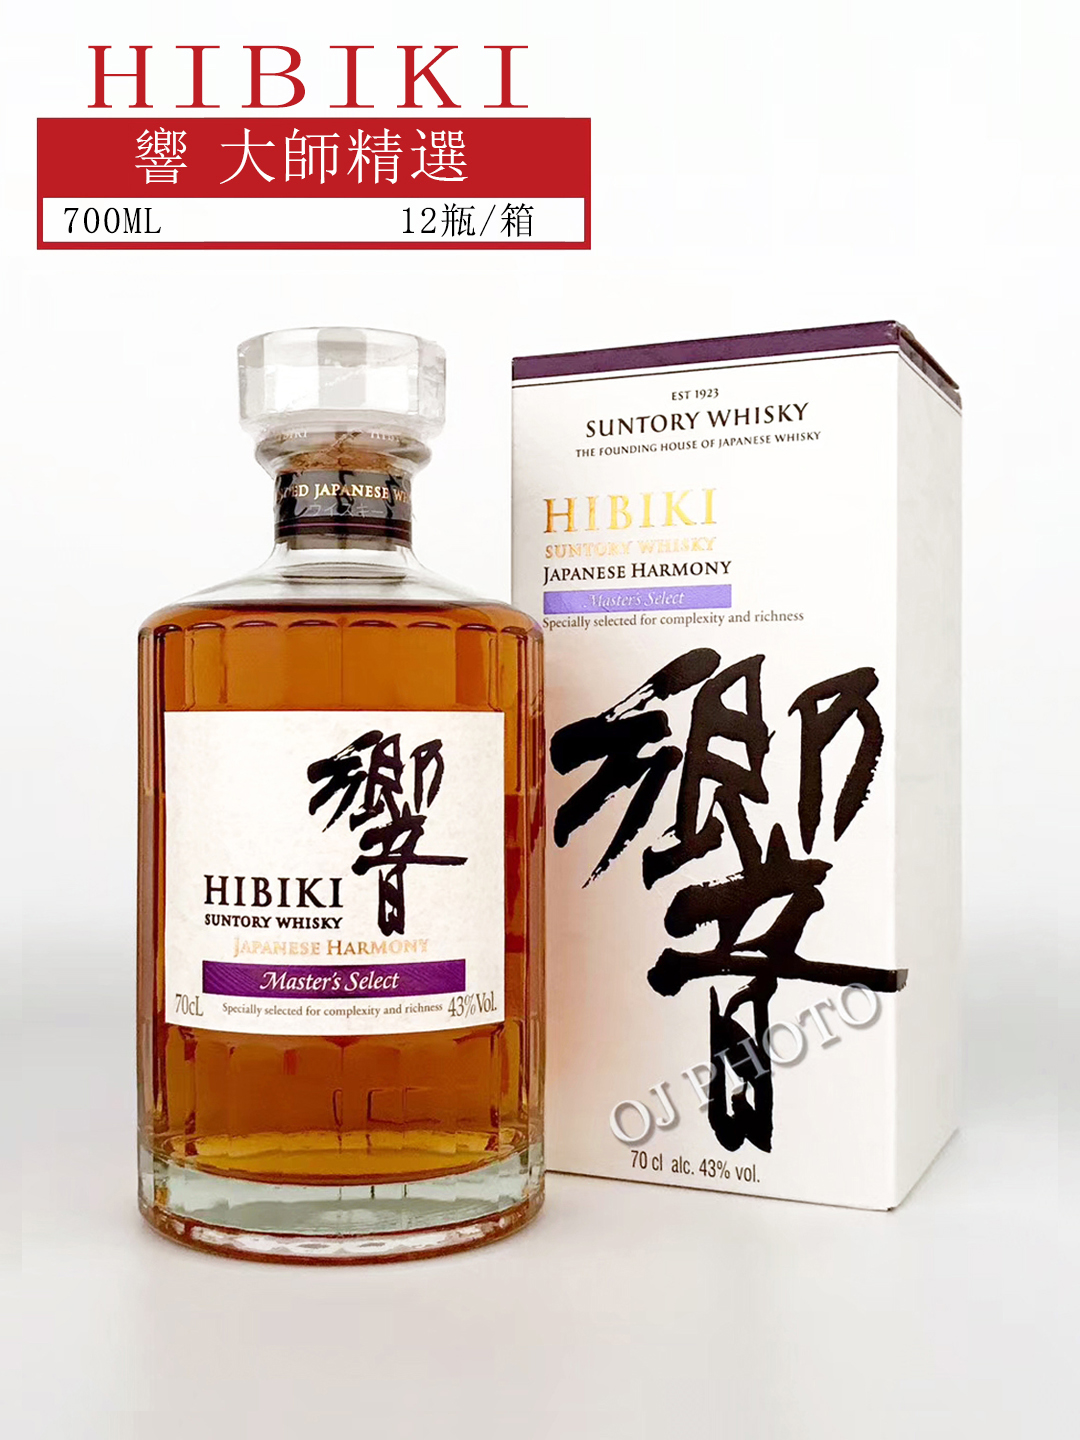 Hibiki Japanese Harmony Master's Select Blended Whisky（響大師精選